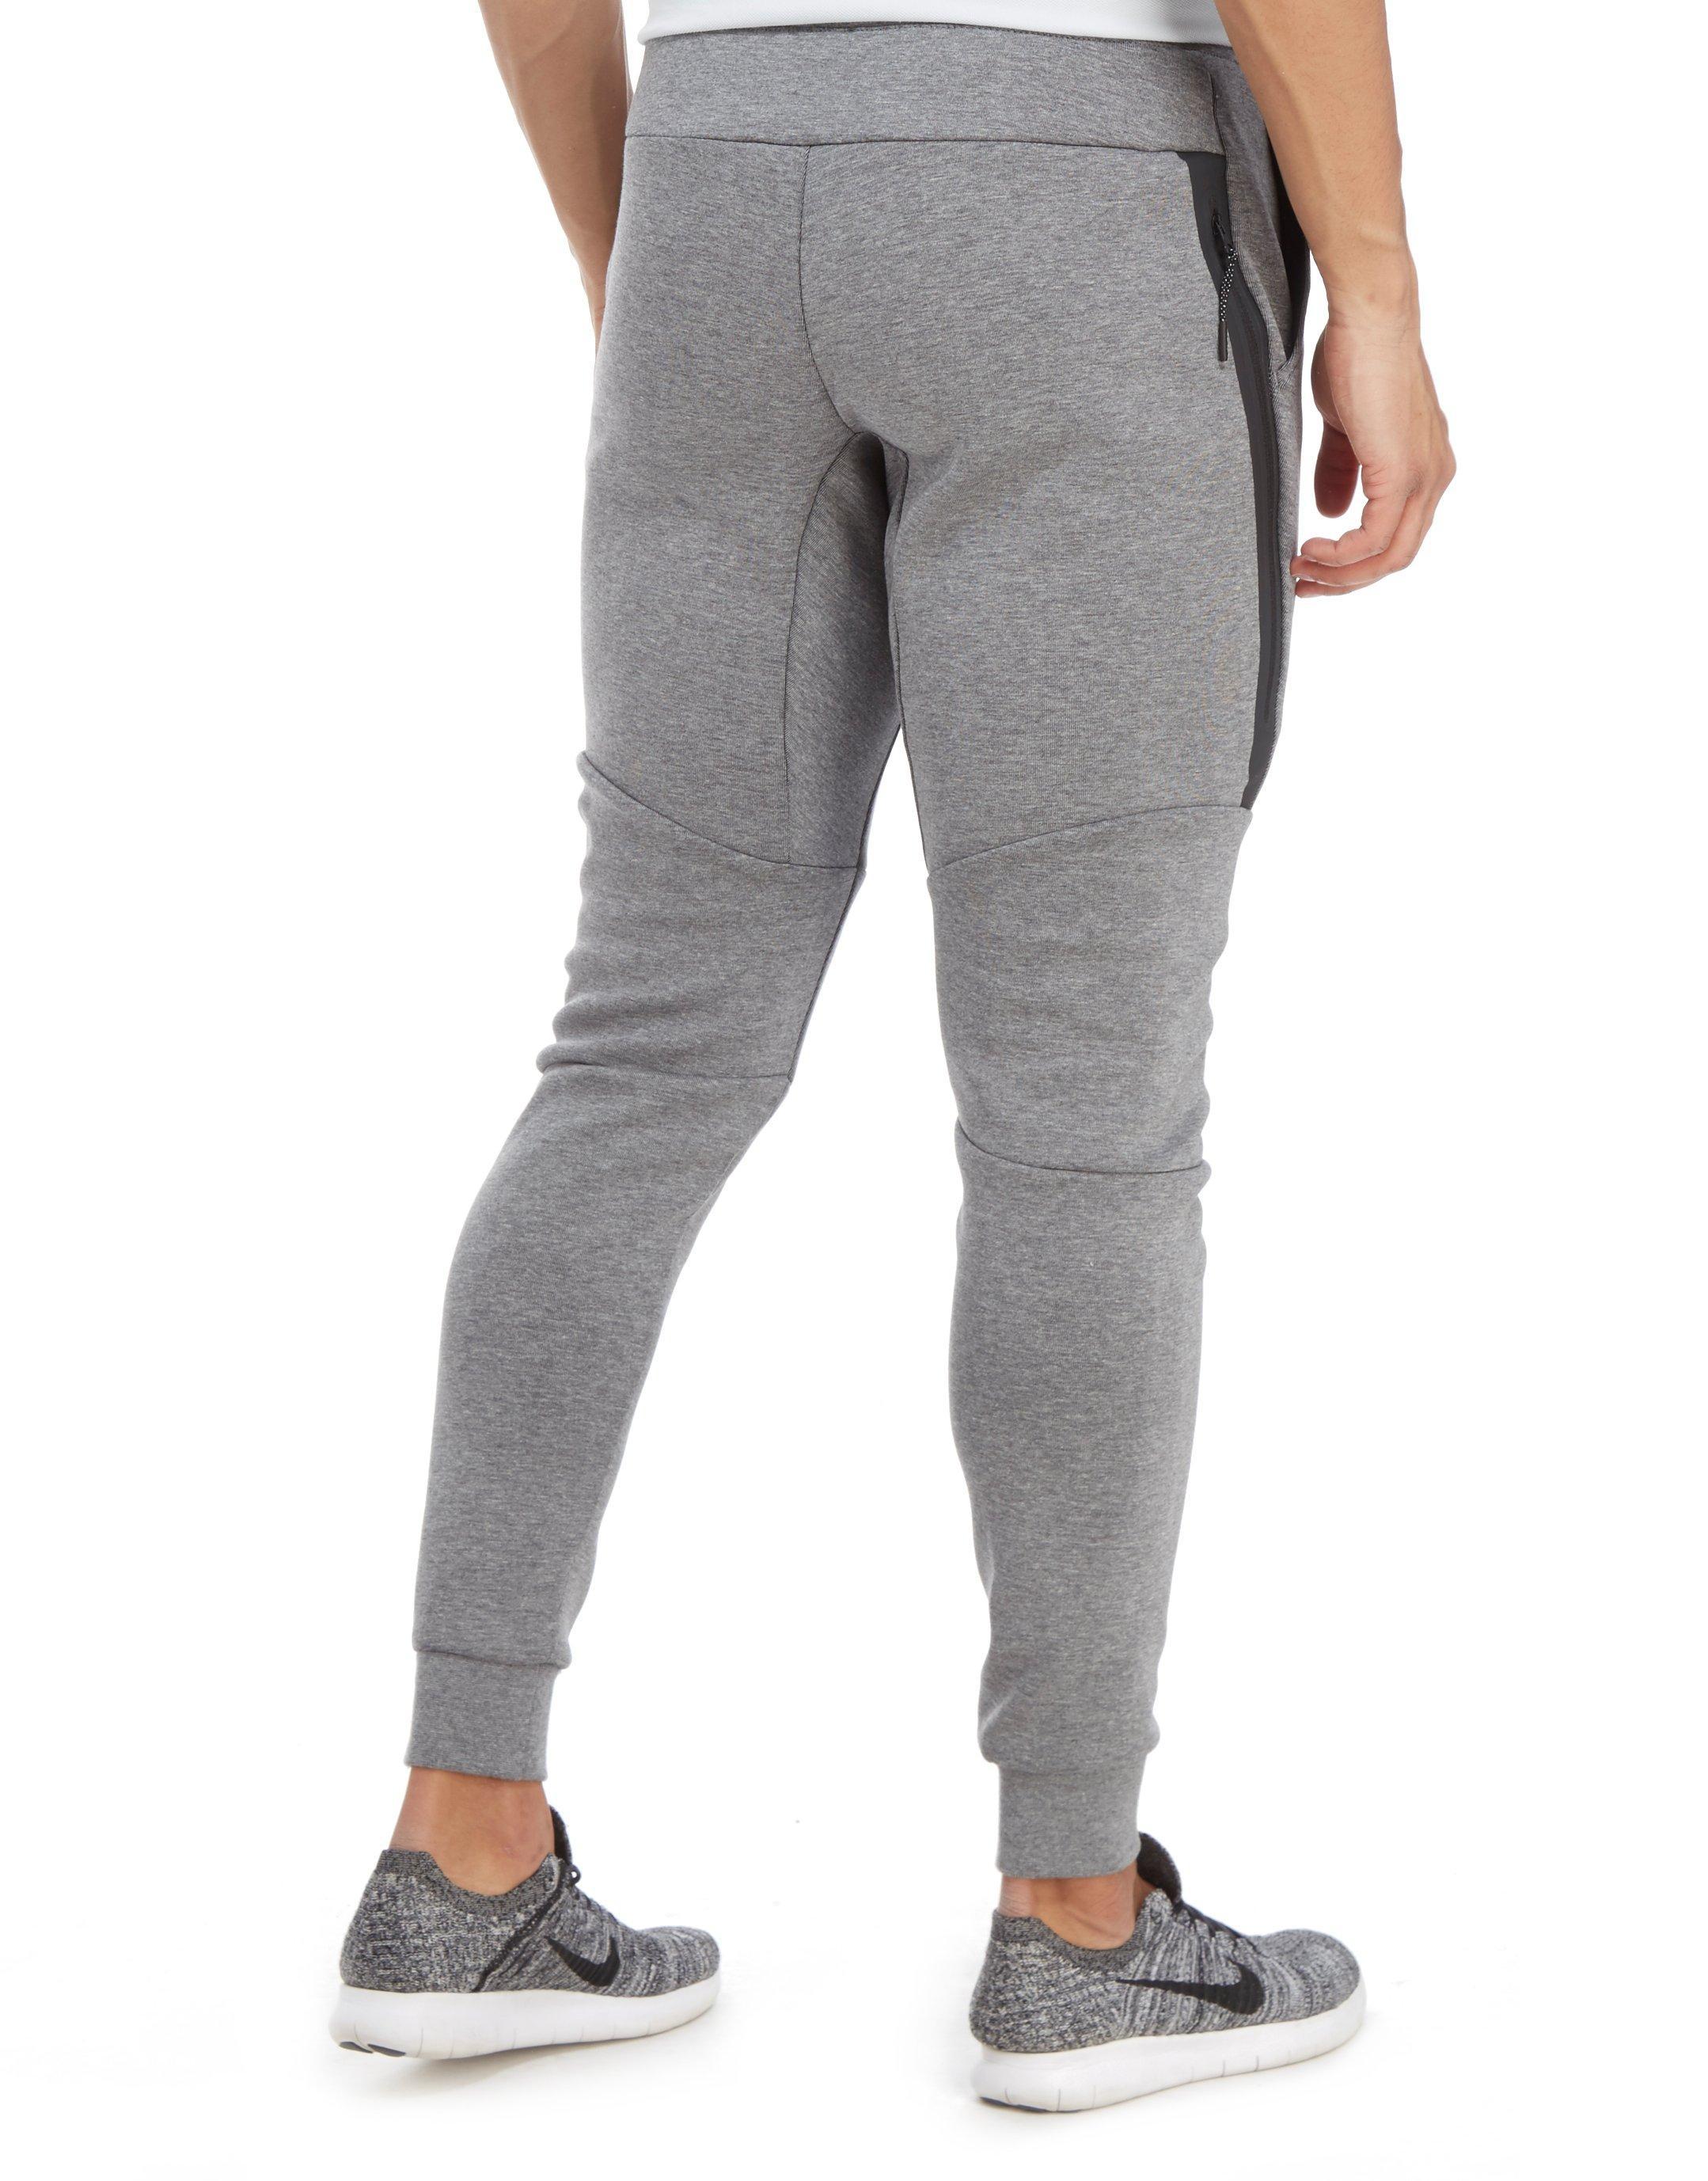 Nike England Tech Fleece Pants in Grey (Gray) for Men - Lyst